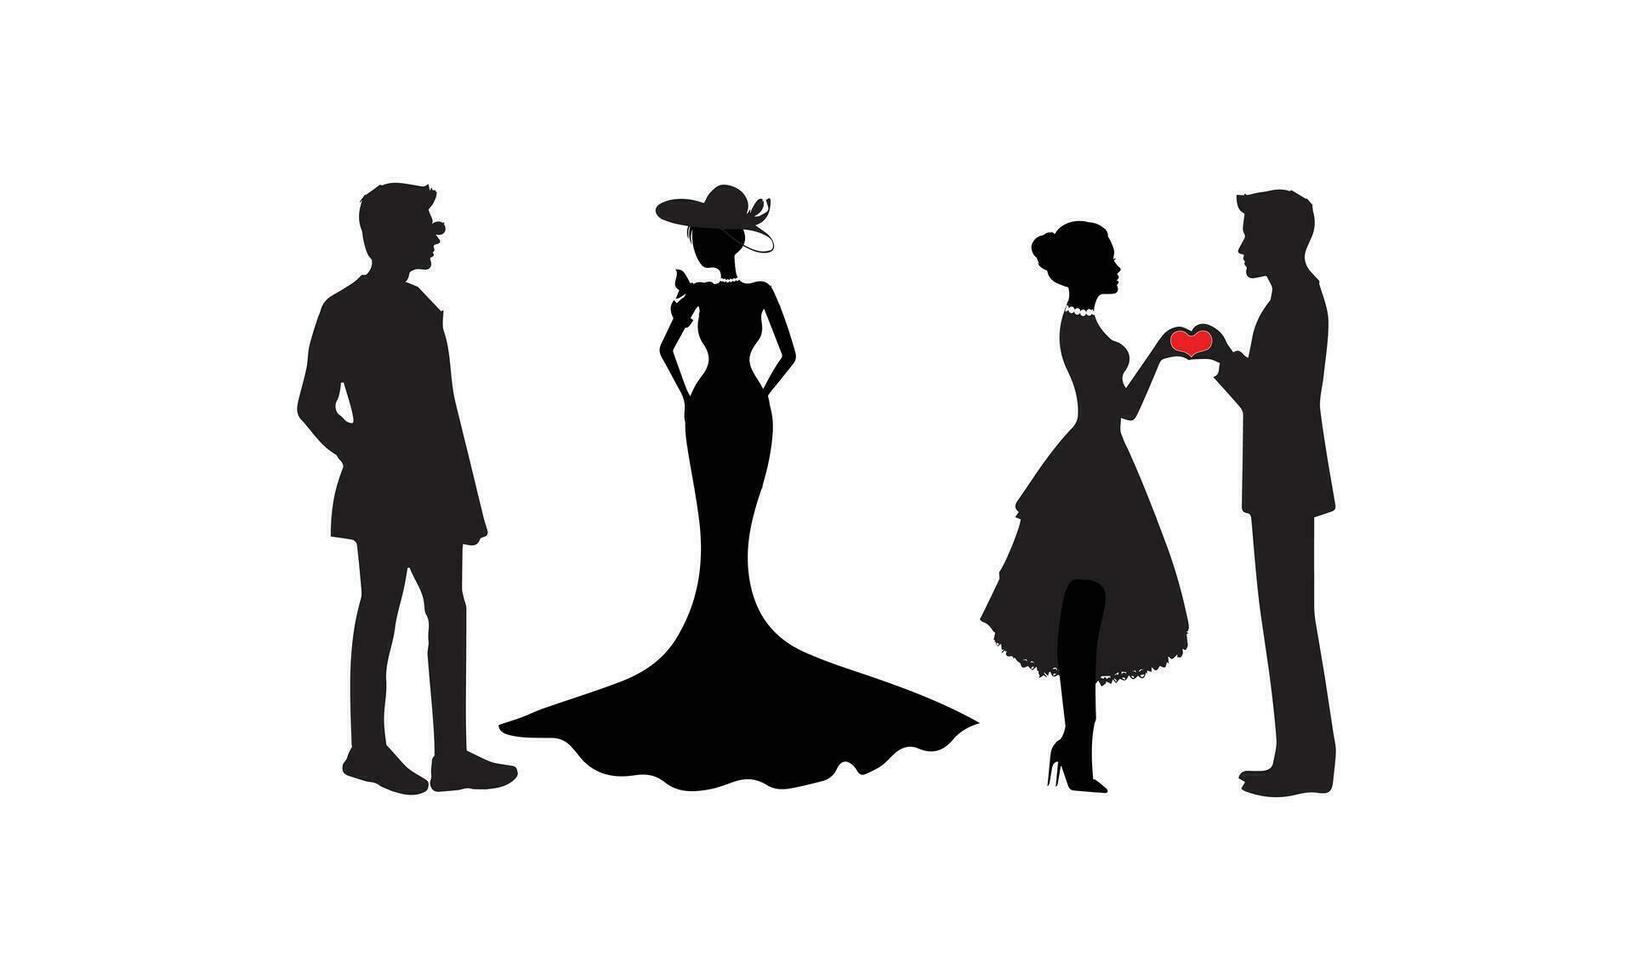 Mann, Frau und Kinder Stehen Silhouette. Gruppe im formal Kleid. Shillouette romantisch Paar Bild. Silhouetten von Personen. vektor